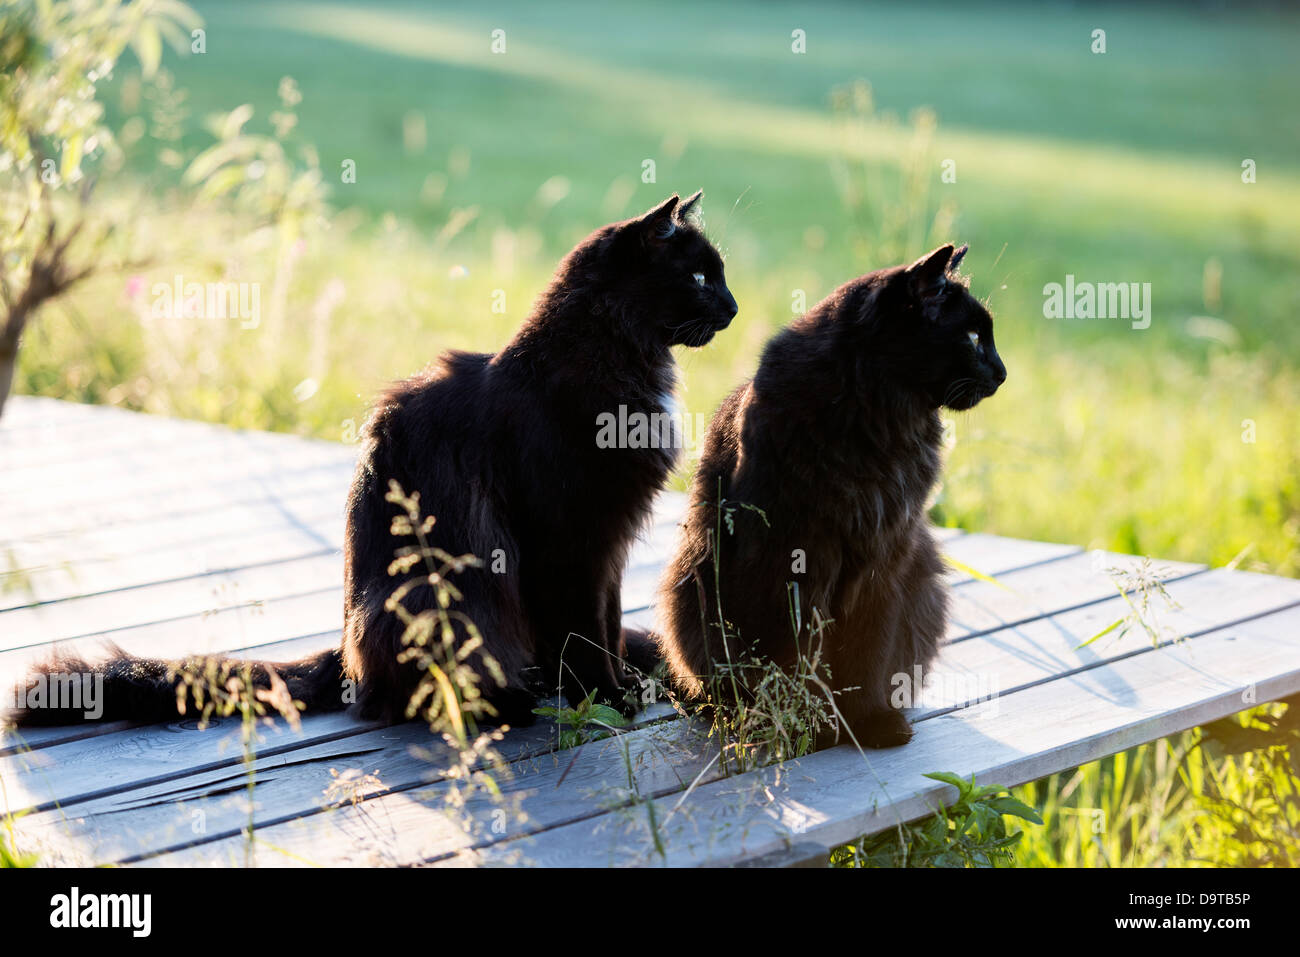 Gatti neri immagini e fotografie stock ad alta risoluzione - Alamy